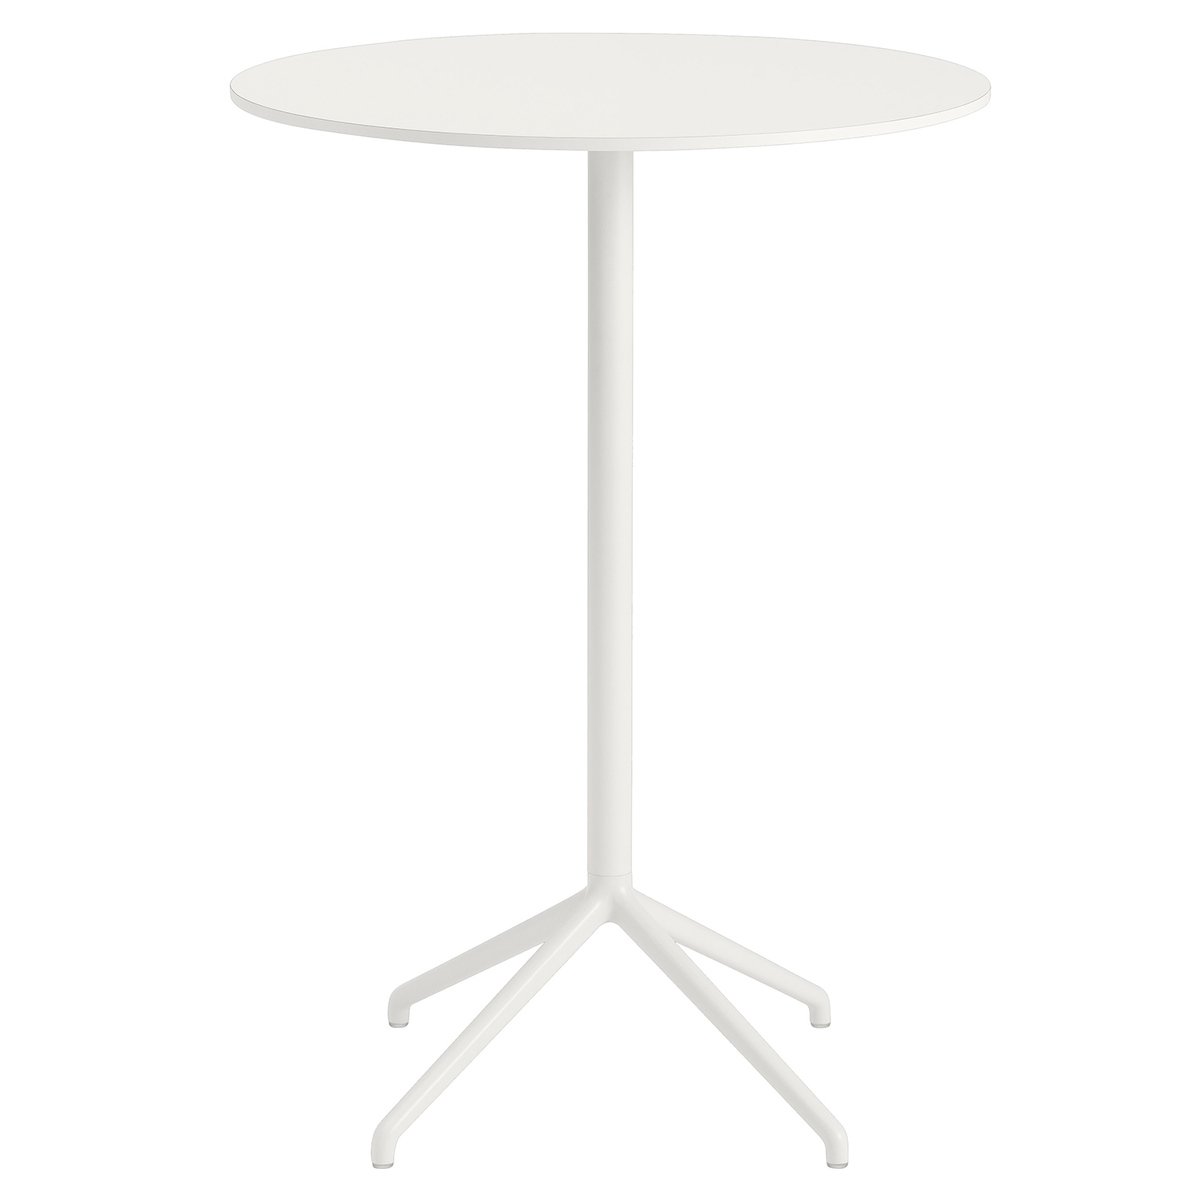 Muuto Still Cafe baaripöytä 75 cm, k. 105 cm, valkoinen